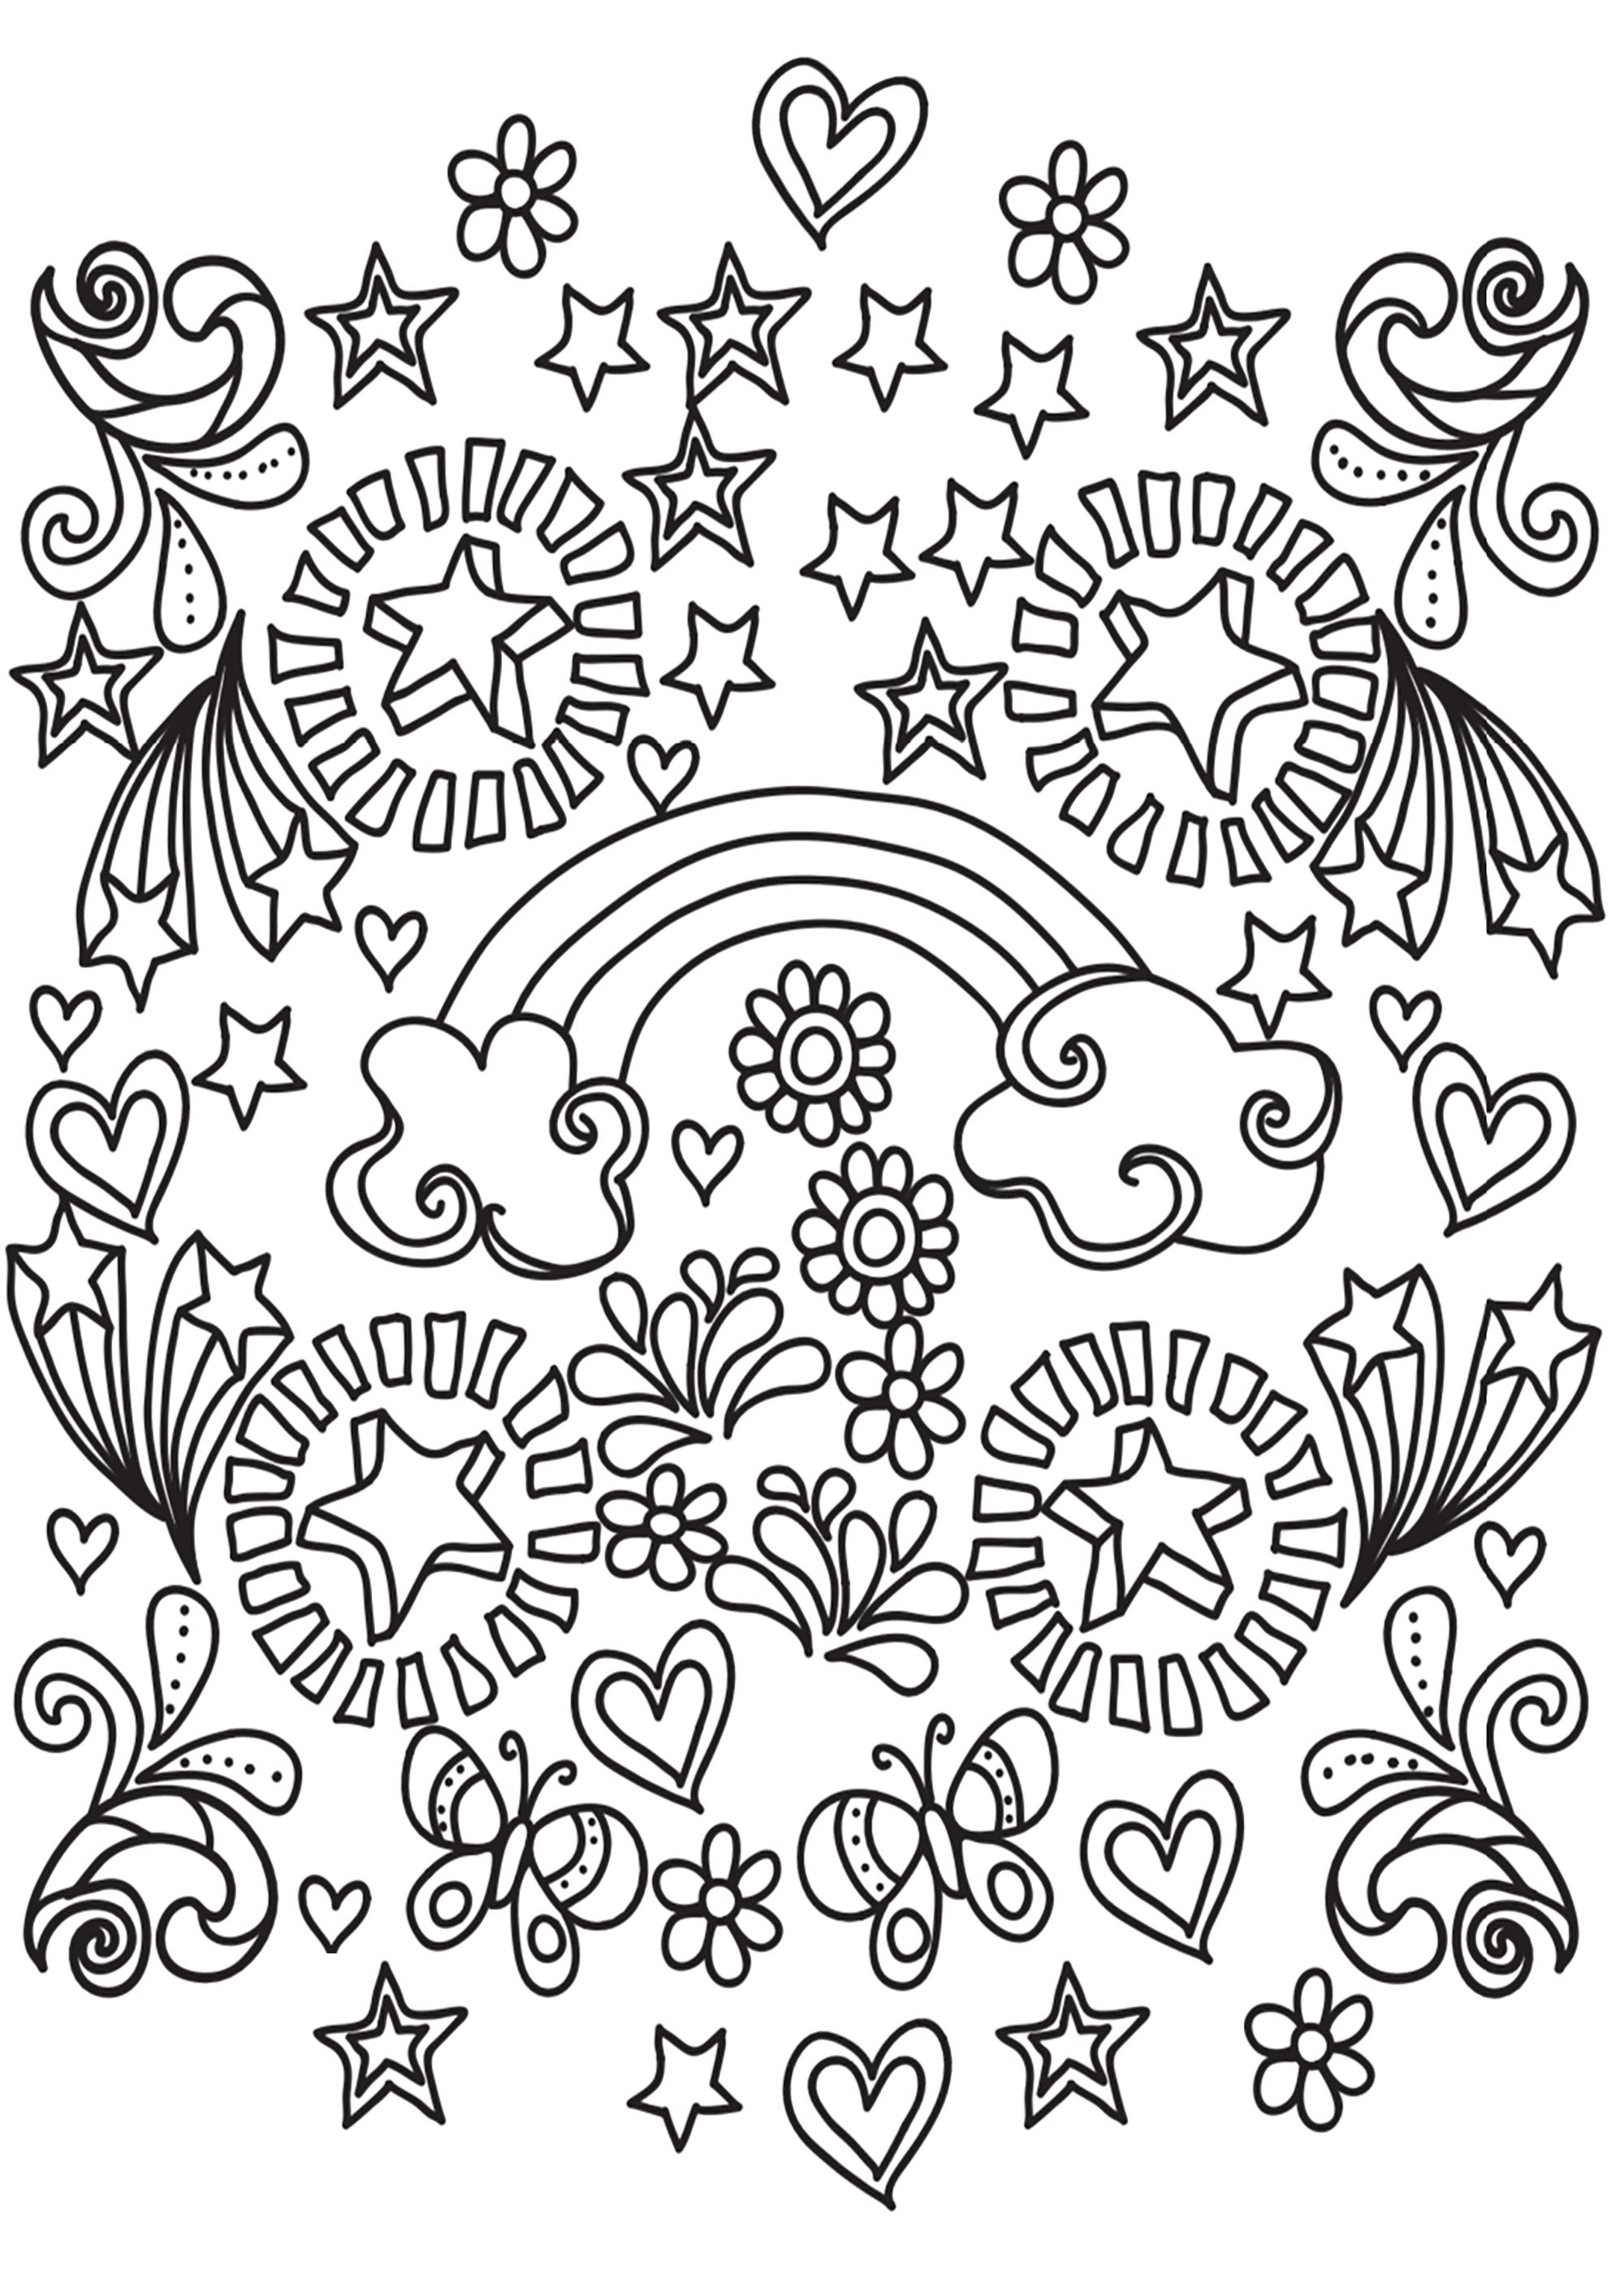 Un Doodle rempli de formes, sujets et motifs représentant la joie de vivre. Des étoiles, coeurs, arcs-en-ciel, papillons ... Vous finirez ce coloriage avec un grand sourire !